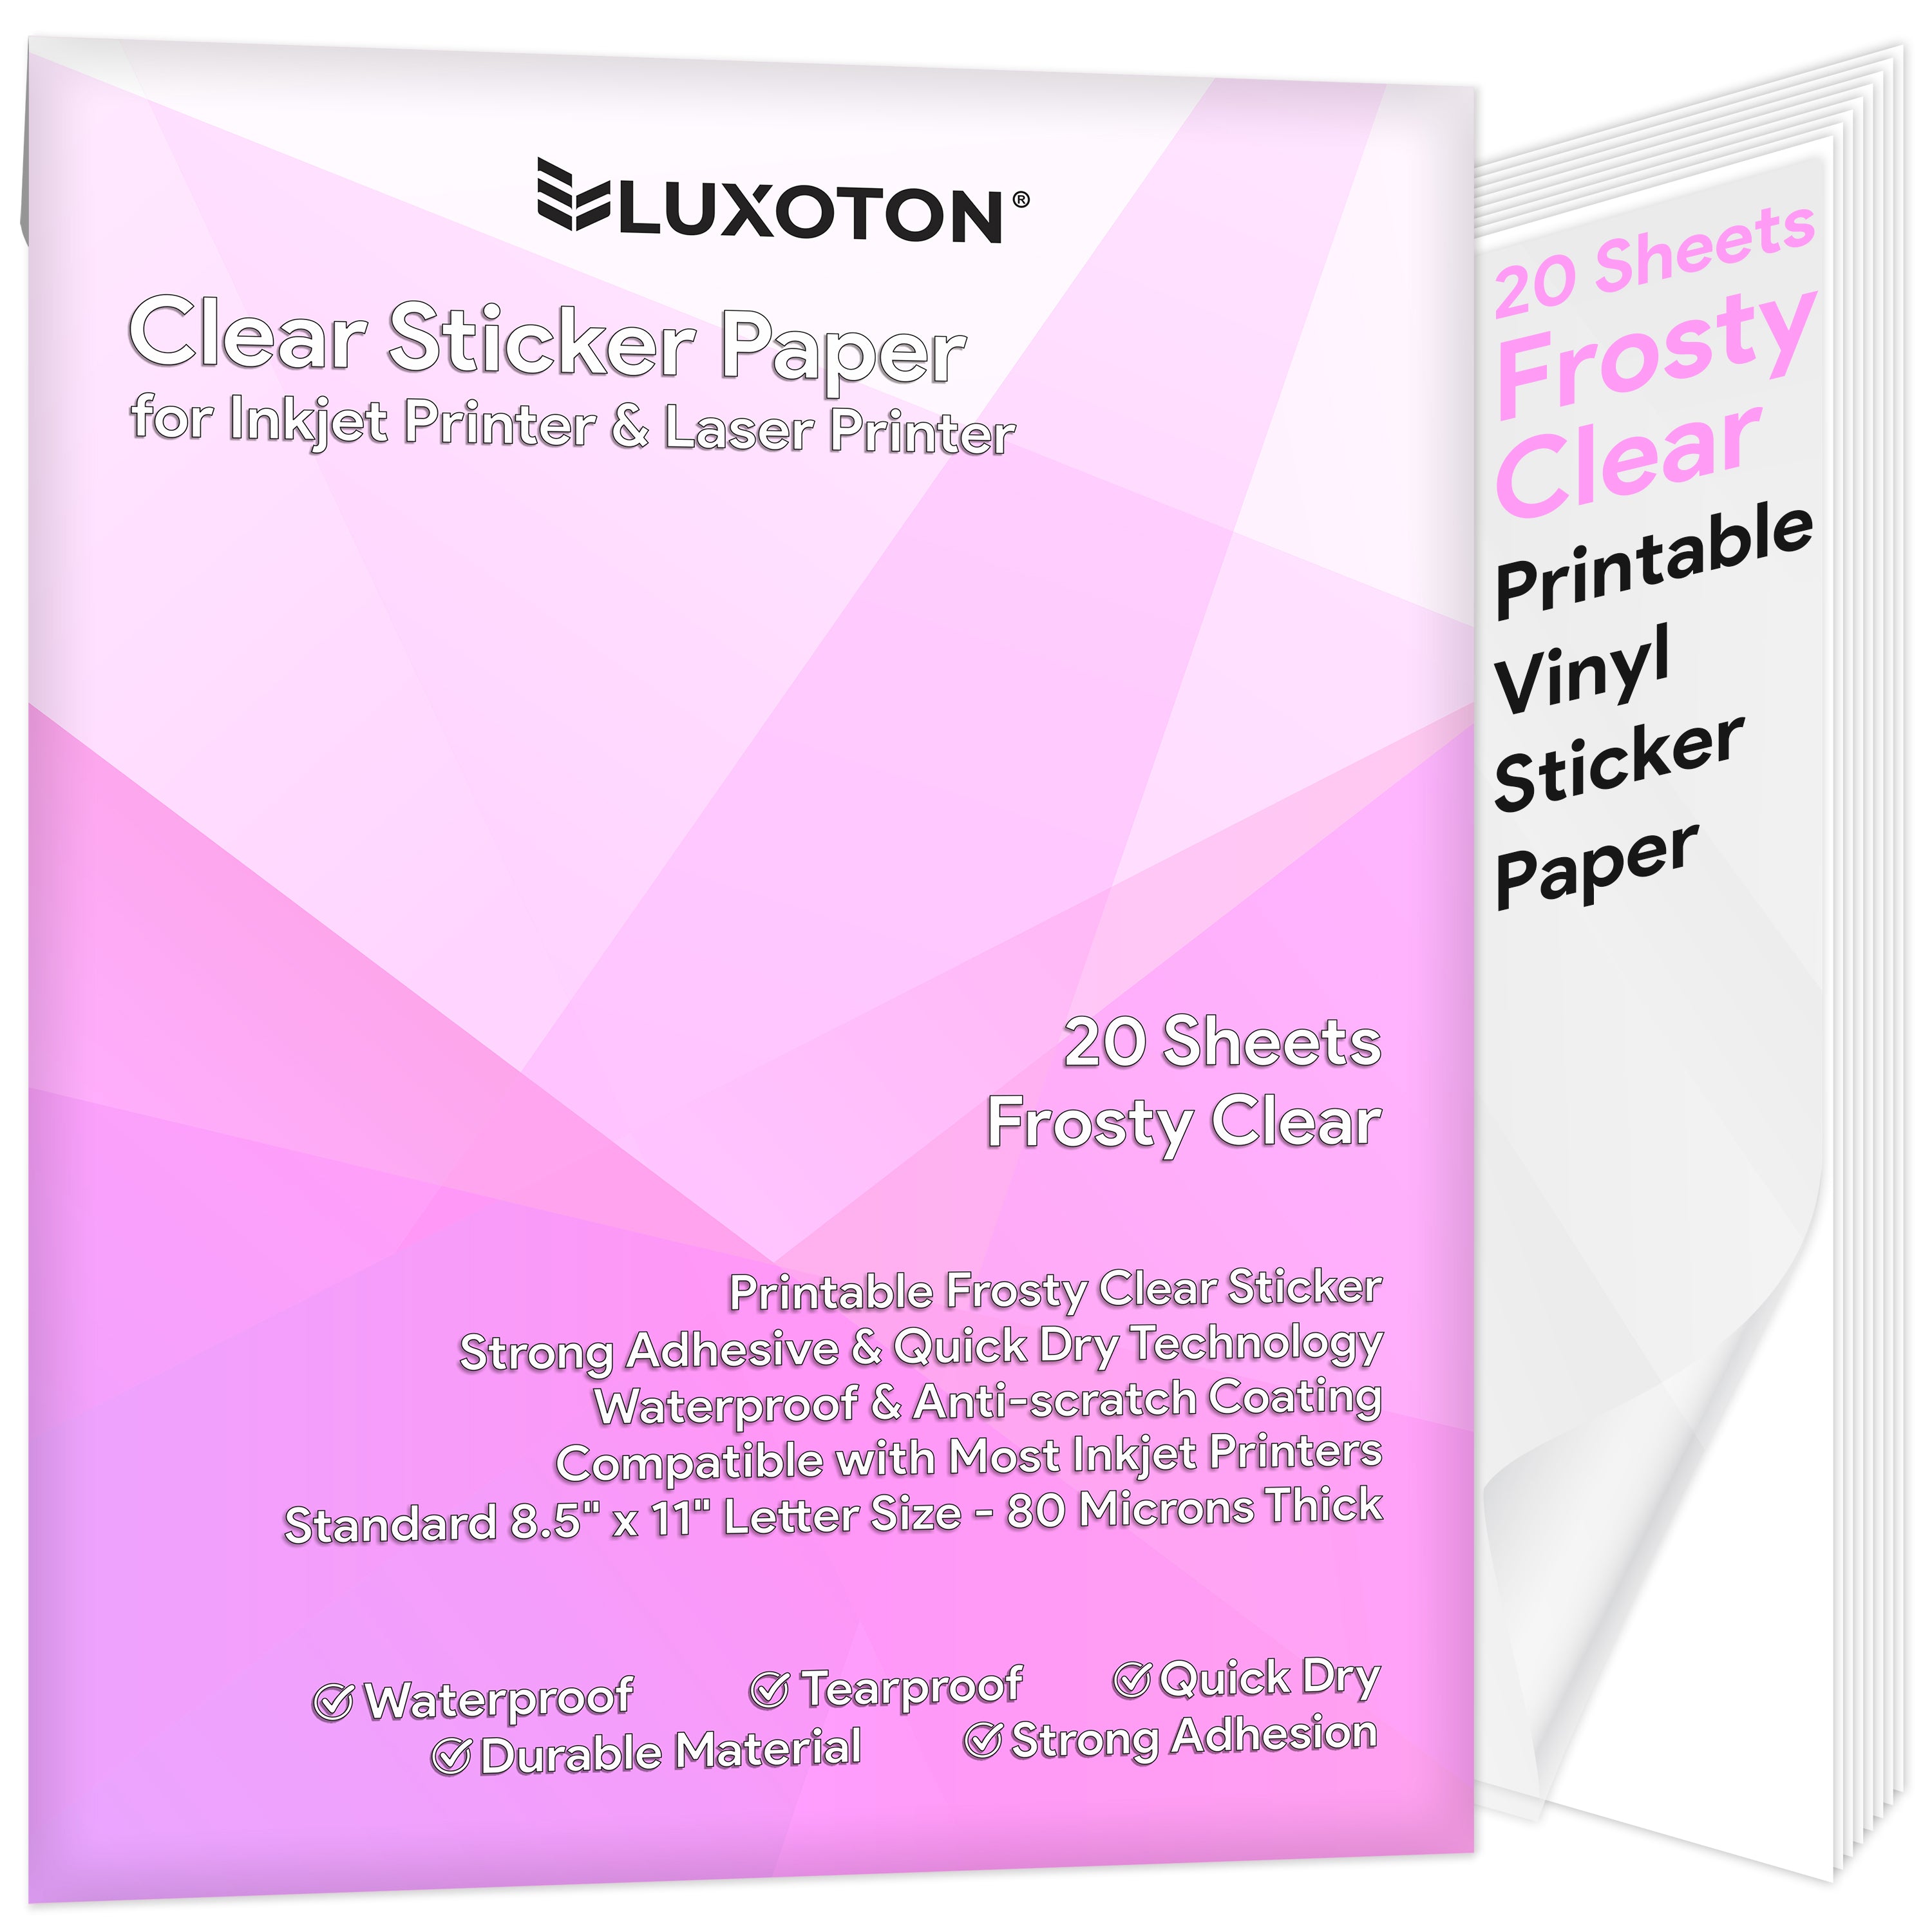 Printable Vinyl for Inkjet Printer (Matte White | Waterproof | 20 Sheets) - Inkjet Printable Vinyl Avoid Jams for Printers | Printable Waterproof